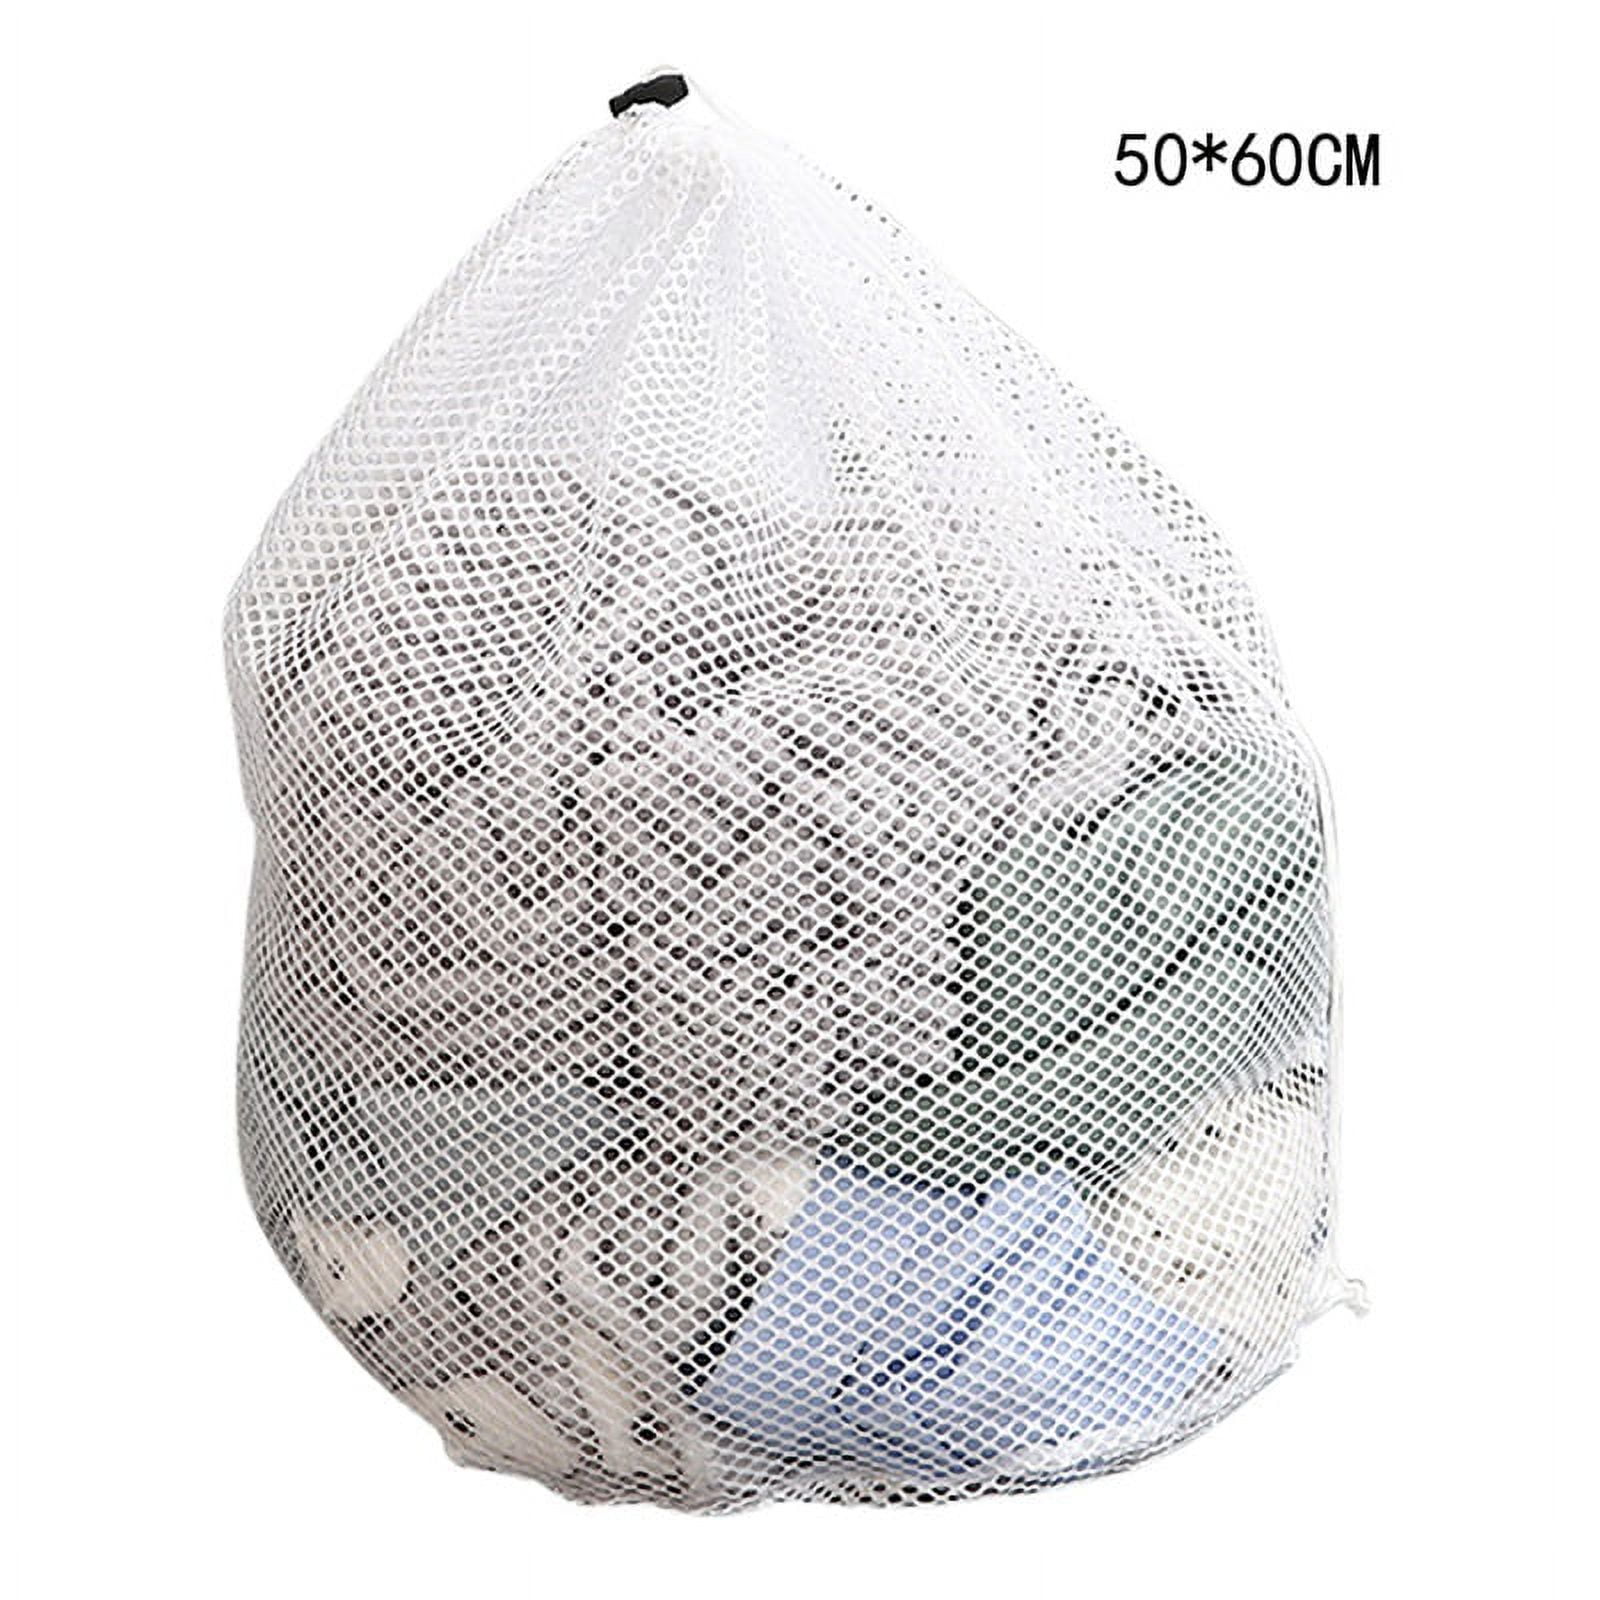 Woolite Sanitized 3-Piece Mesh Wash Bag